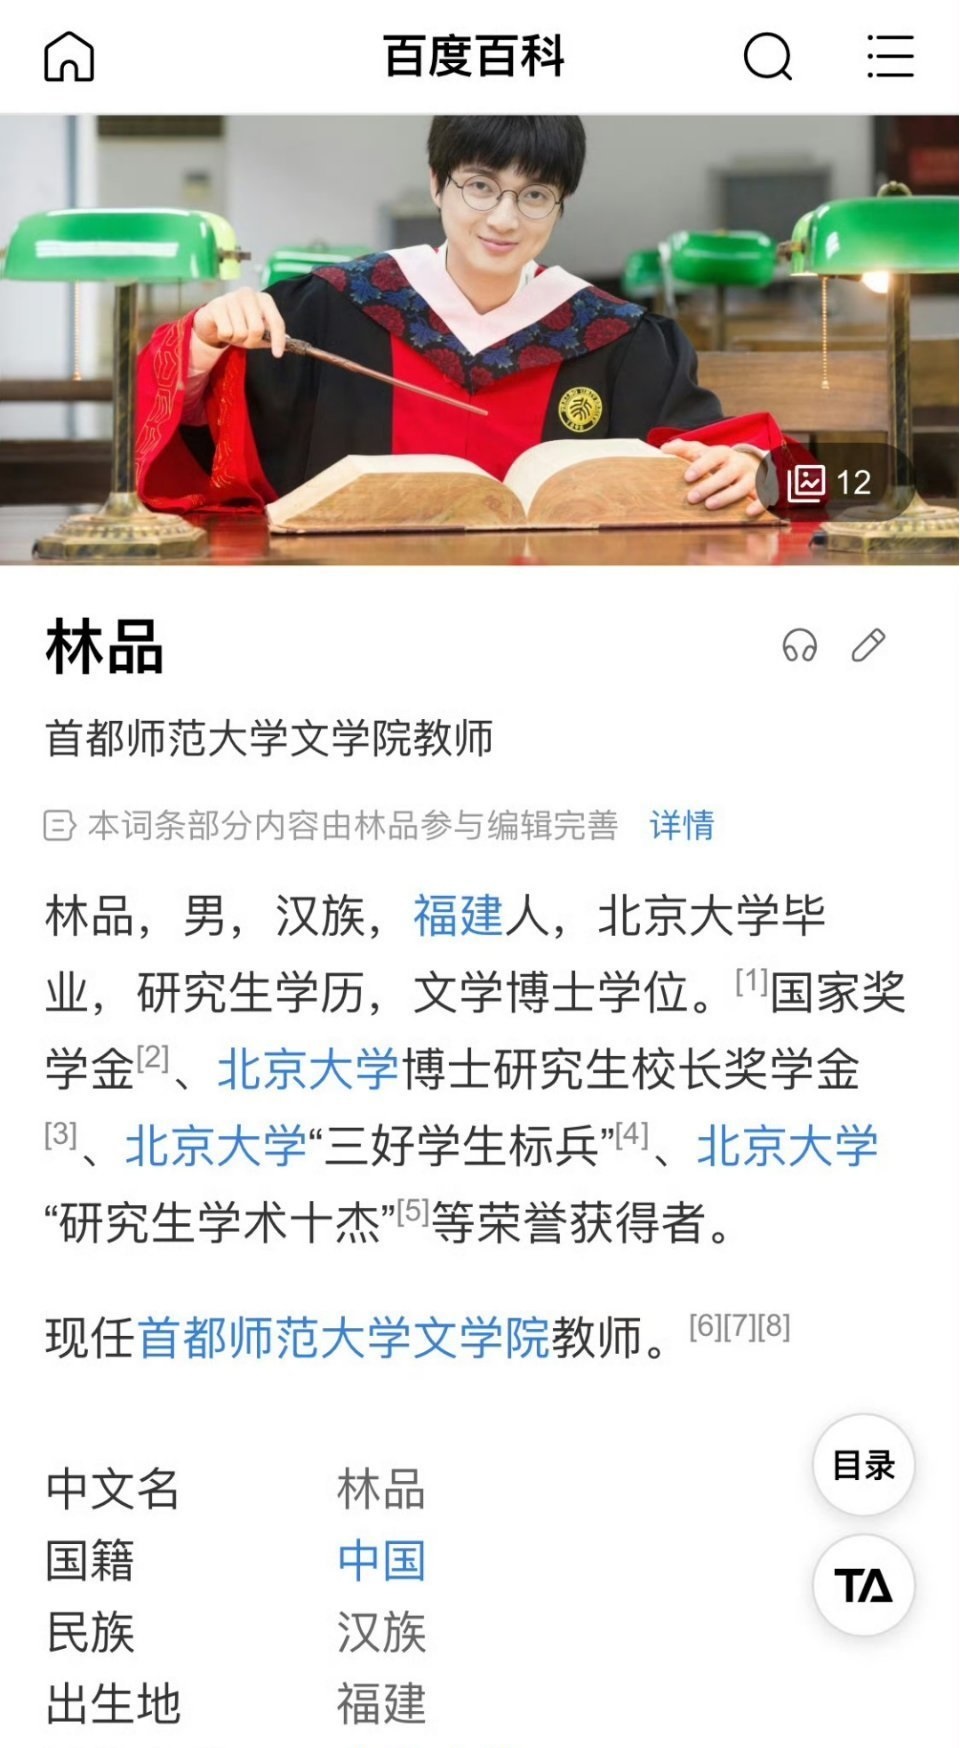 林品是北京首都師範大學的教師。微博